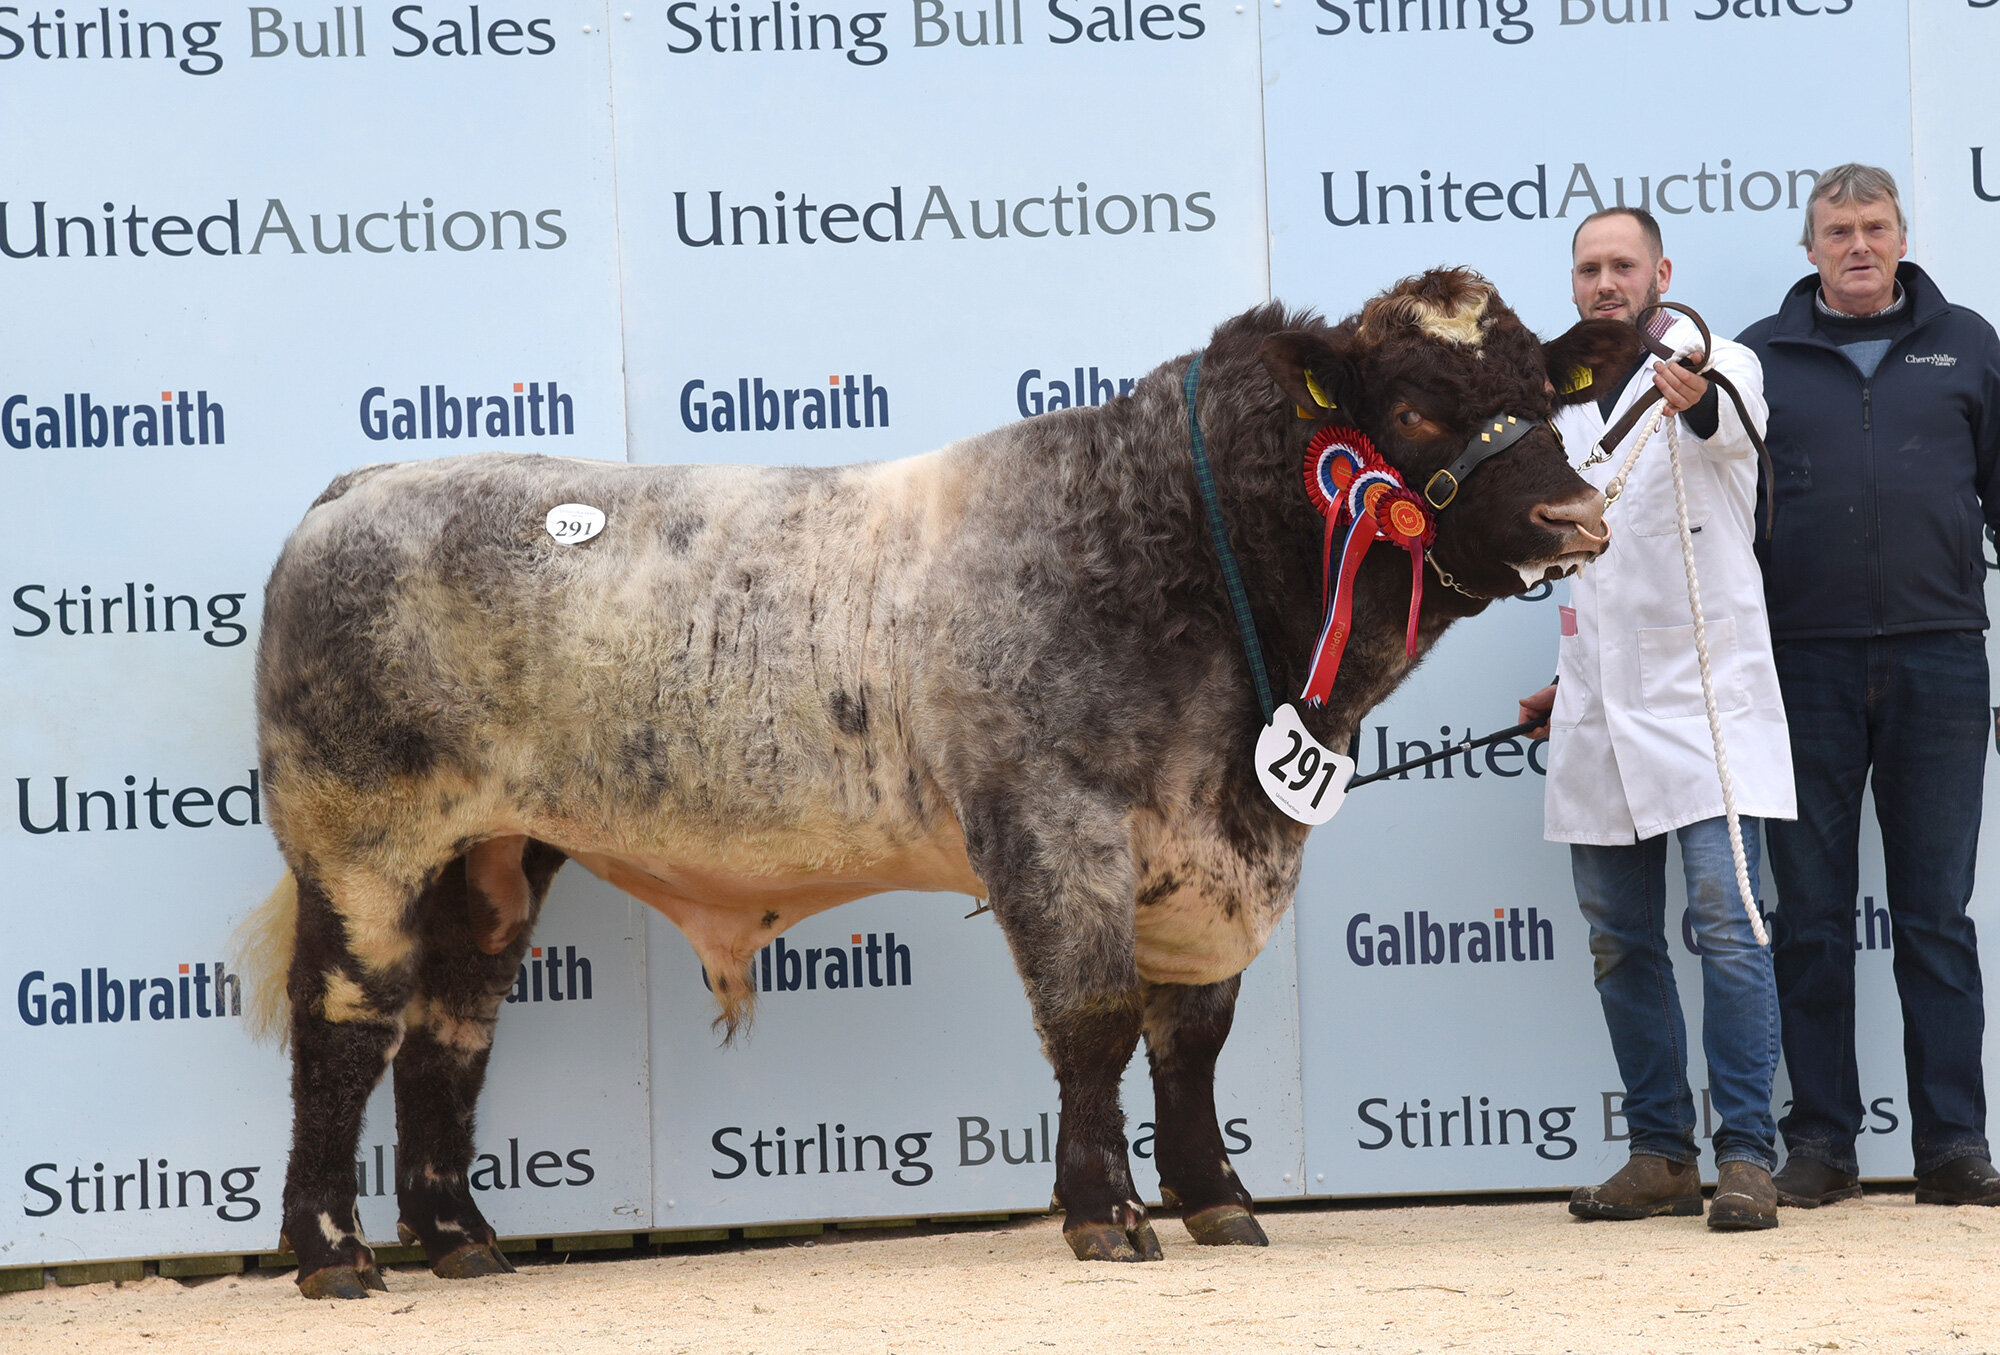 Stirling Bull Sales - October